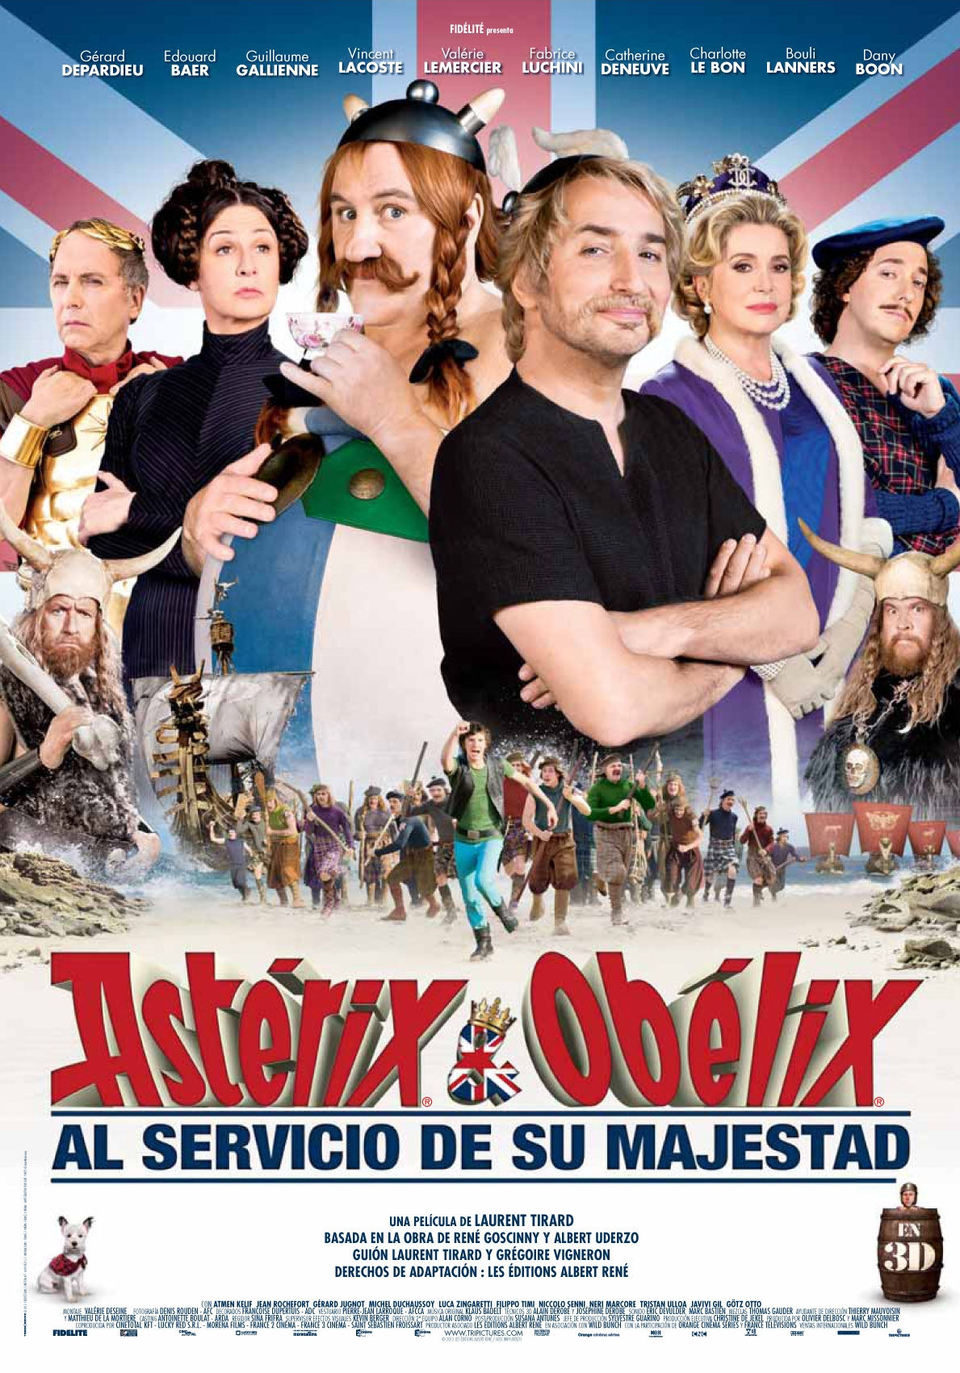 Cartel de Astérix y Obélix al servicio de su majestad - España